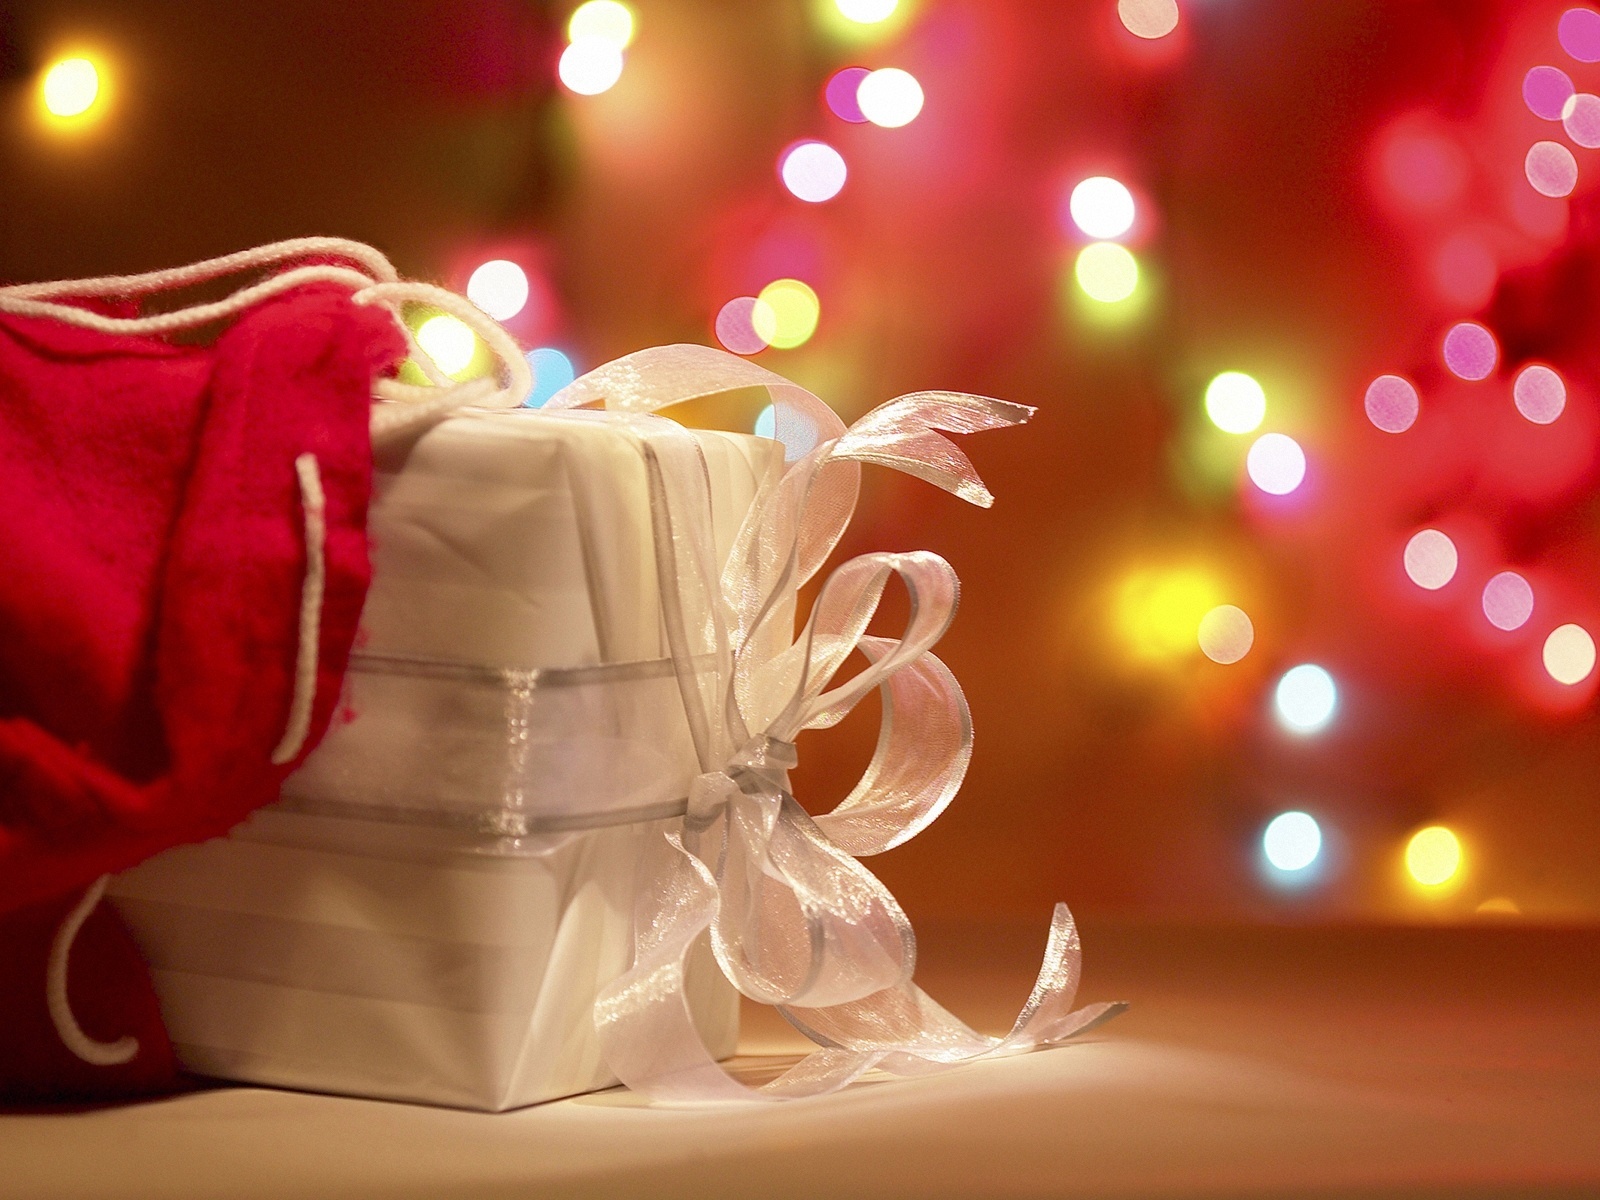 高清晰圣诞节礼物包装彩蝶节壁纸